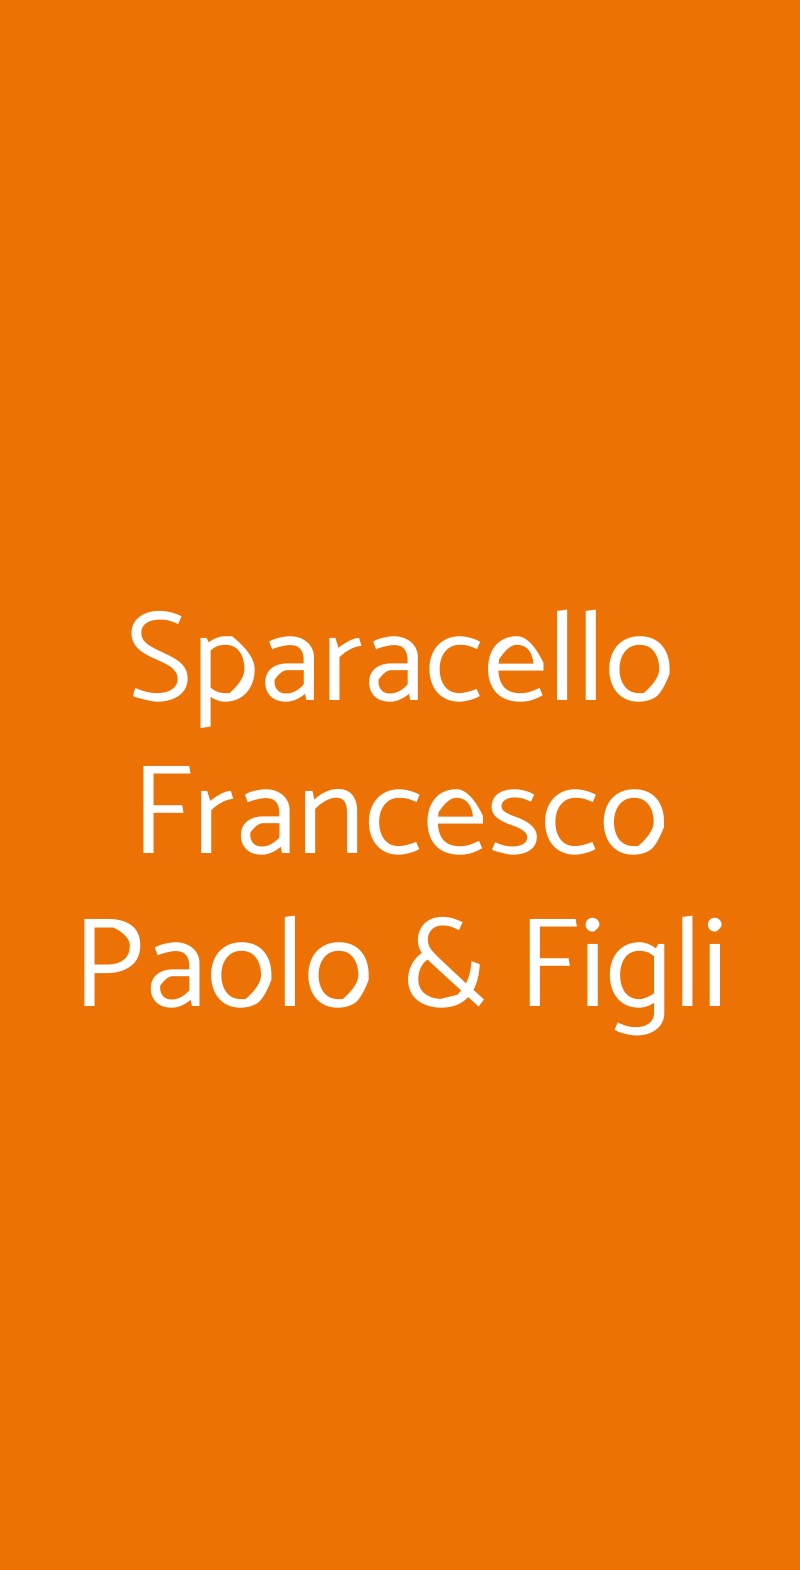 Sparacello Francesco Paolo & Figli Palermo menù 1 pagina